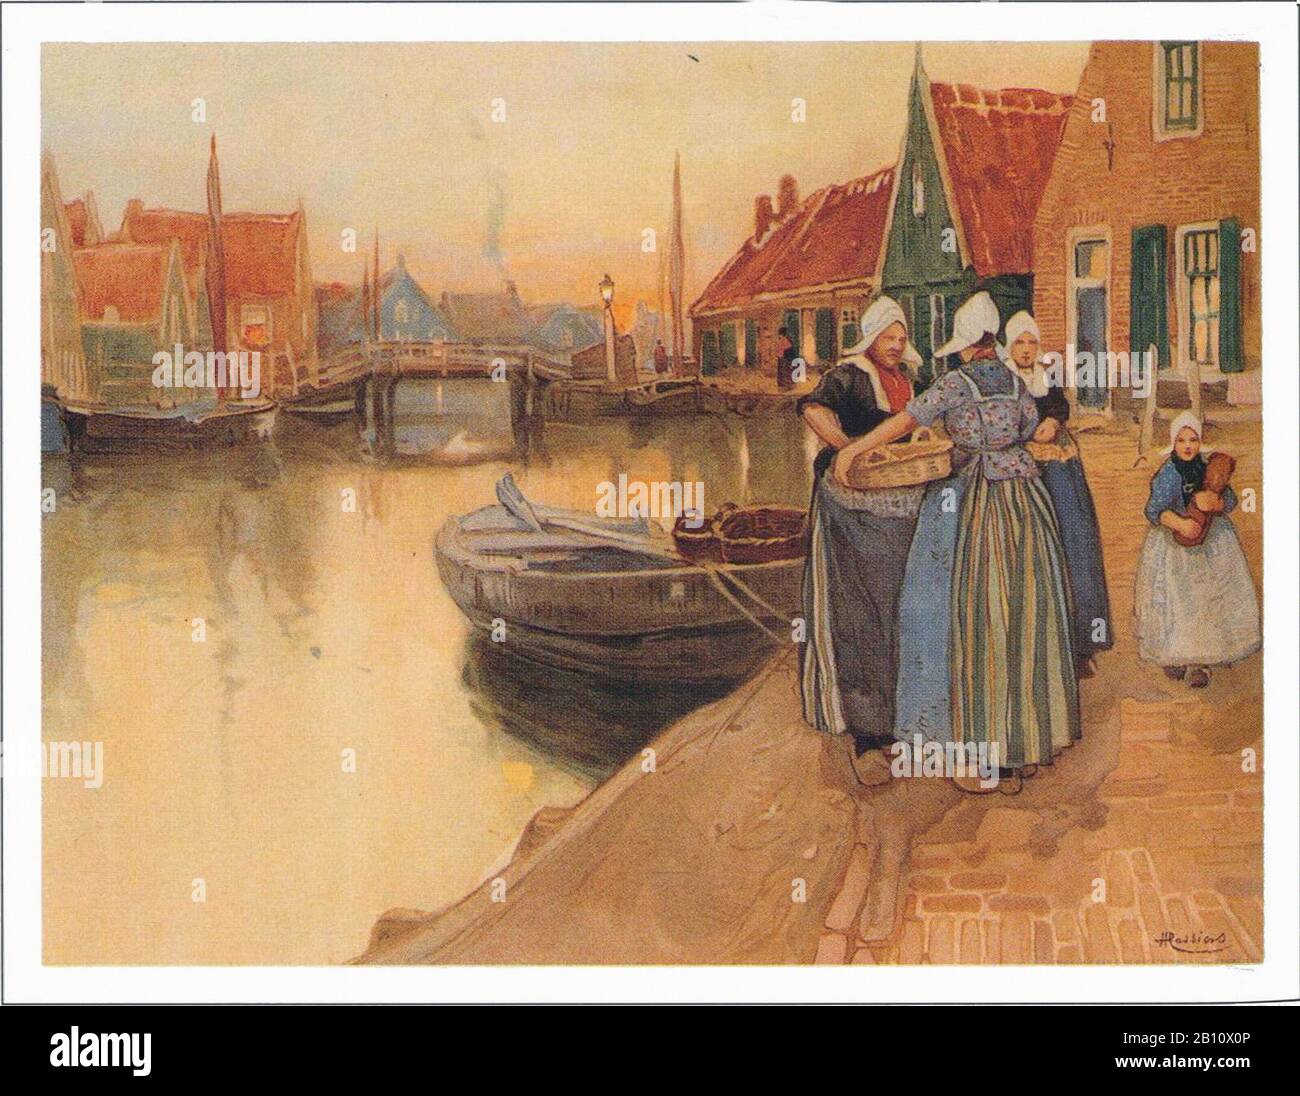 Volendam vrouwen haven - Ilustración de Henri Casers (1858 - 1944) Foto de stock